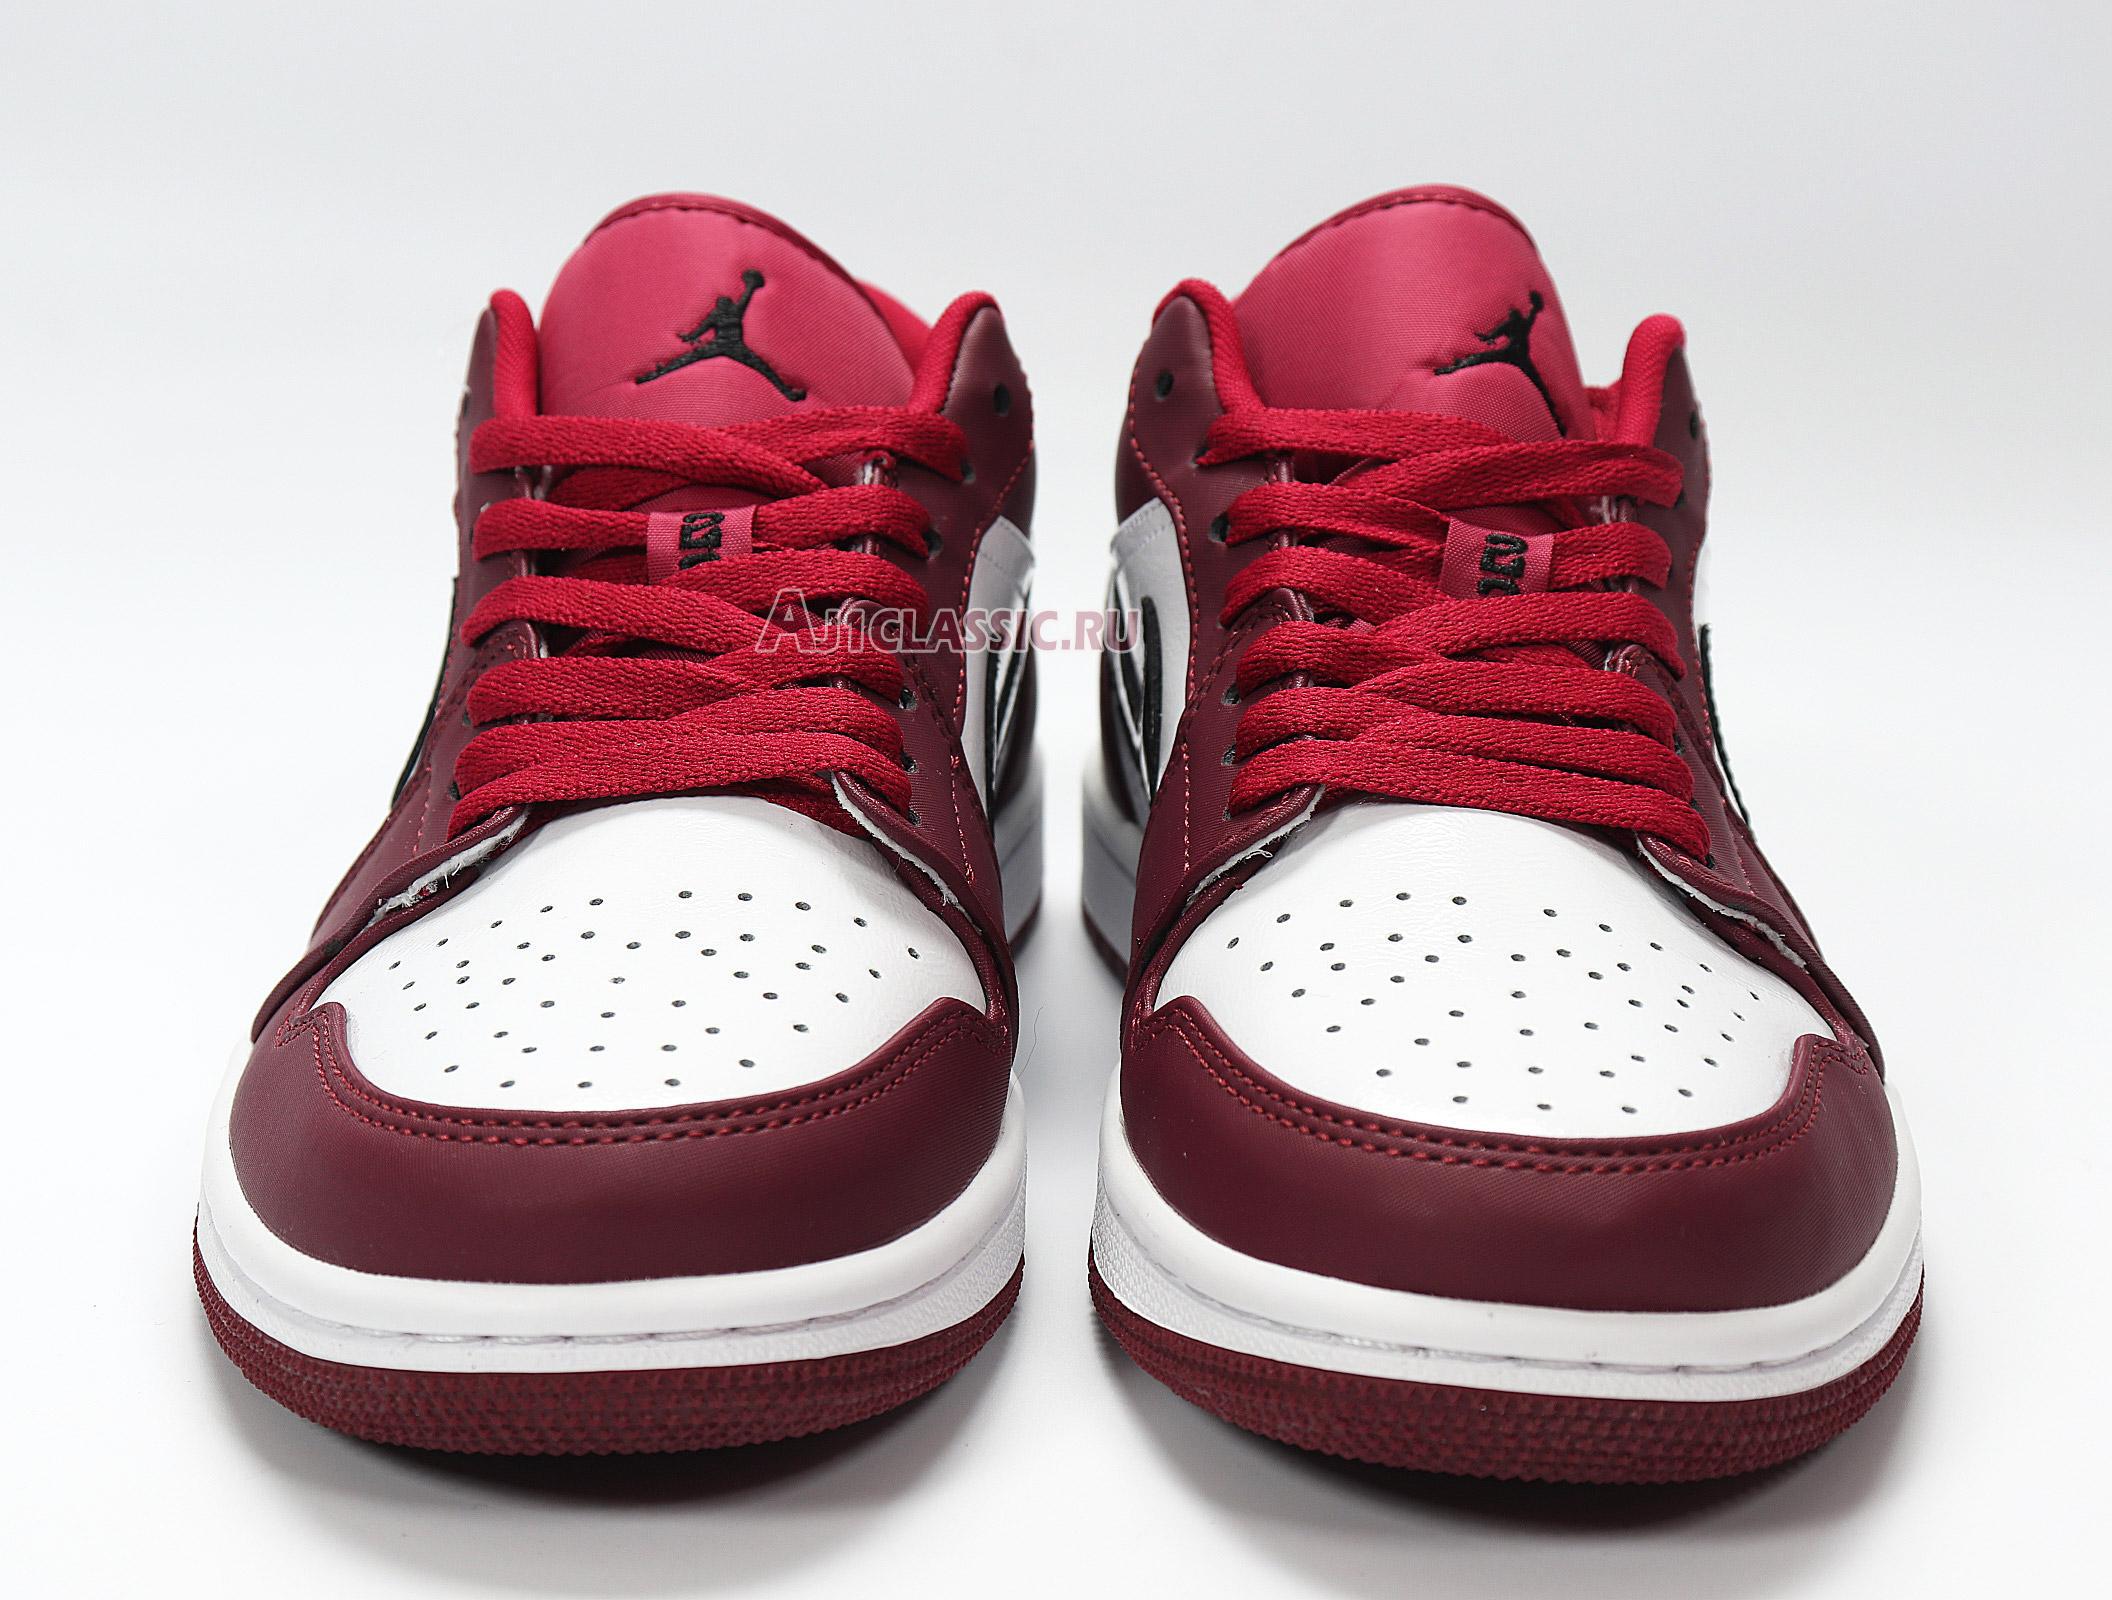 Air Jordan 1 Low "Noble Red" 553558-604